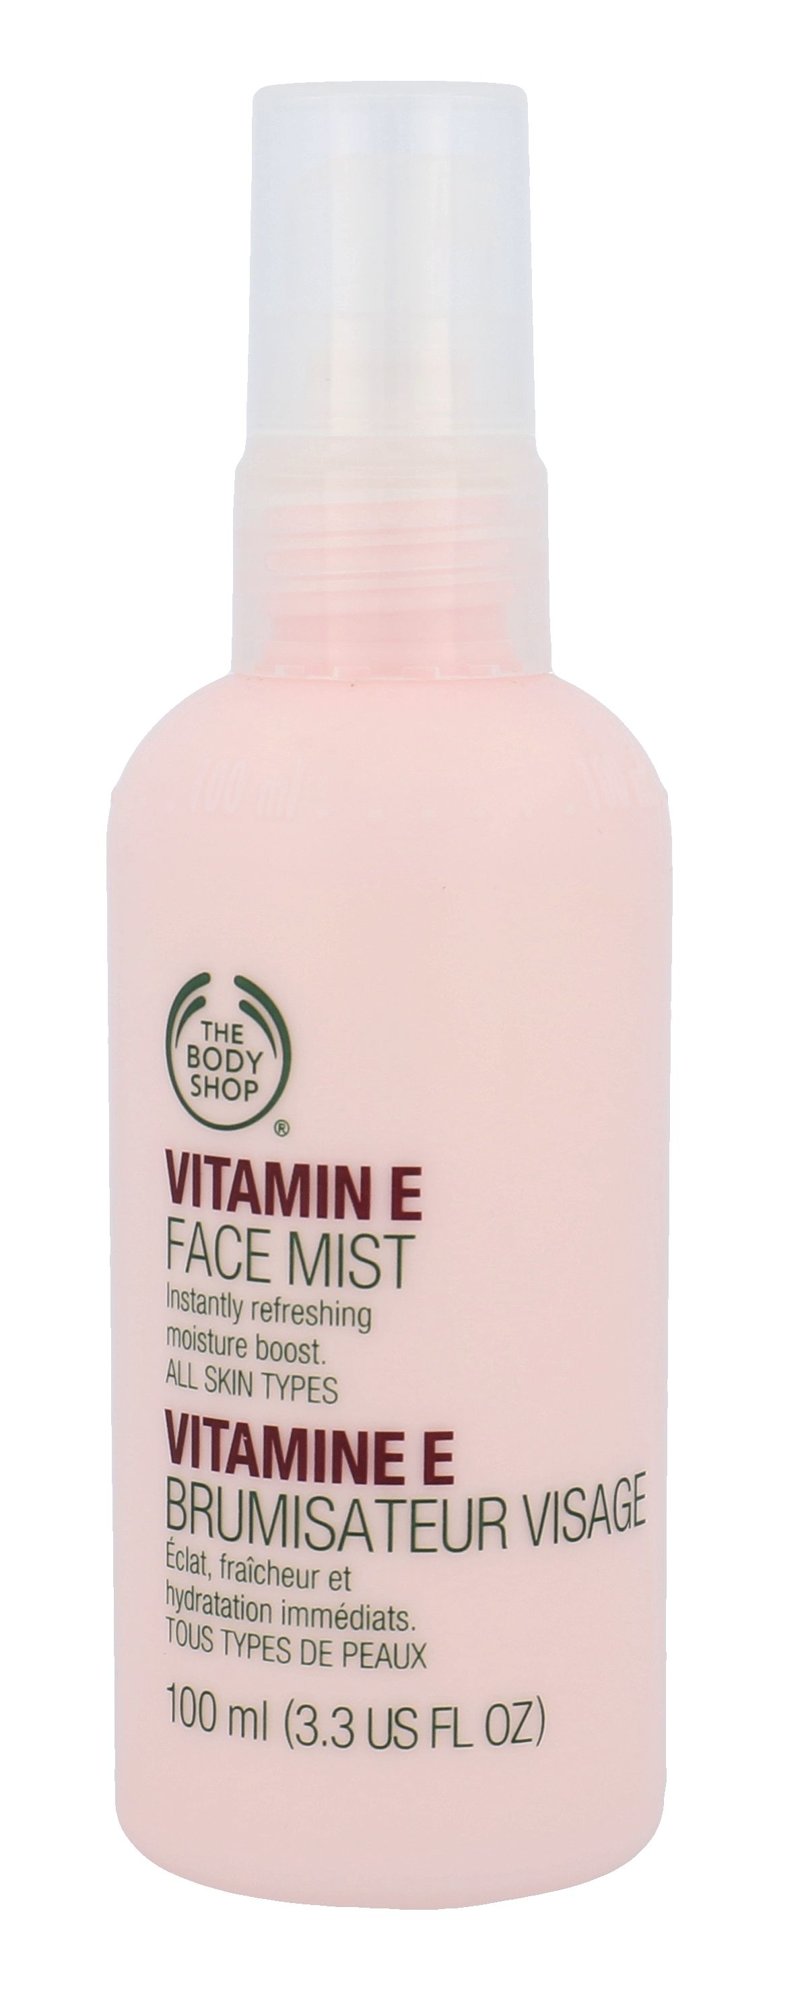 The Body Shop Vitamin E Face Mist